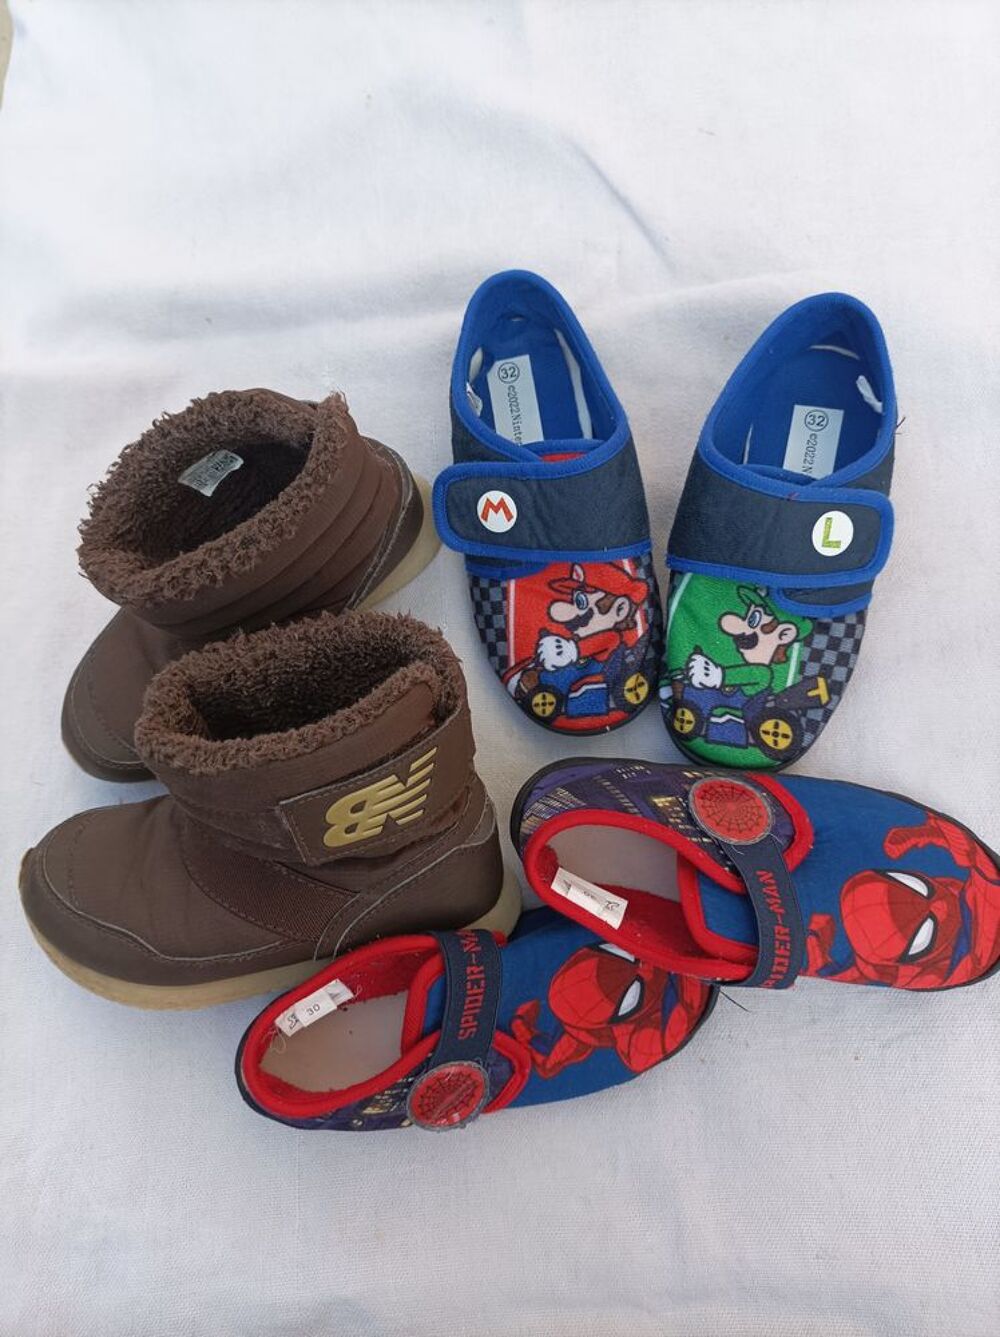 Pantoufles et bottines enfant. Chaussures enfants